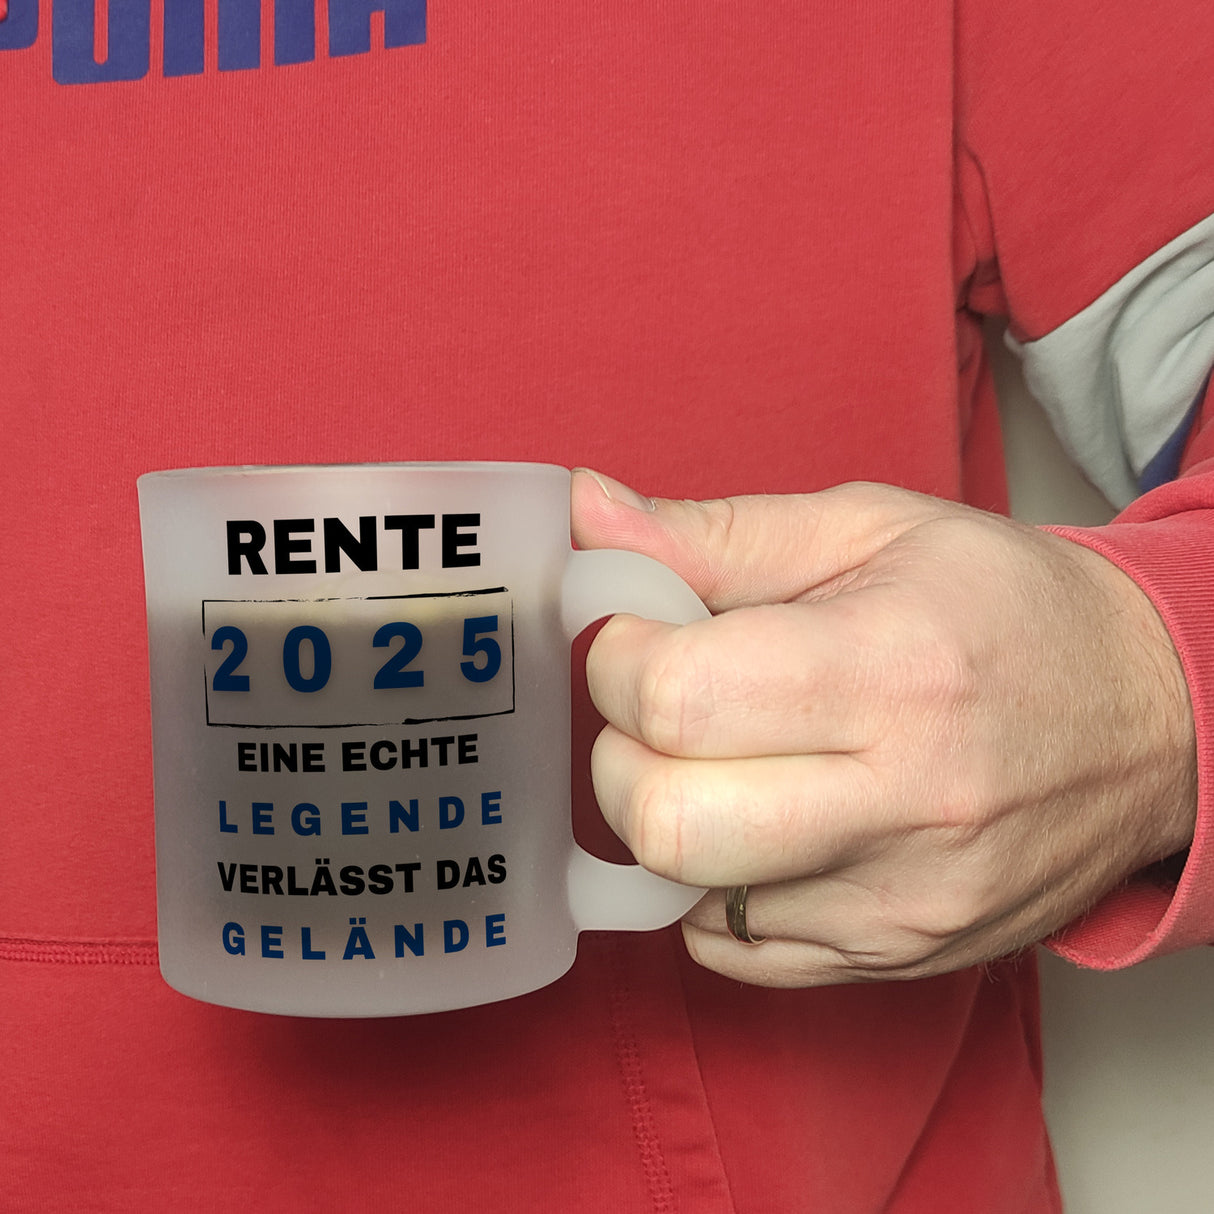 Rente 2025 Kaffeebecher mit Spruch Rente 2025 Legende geht